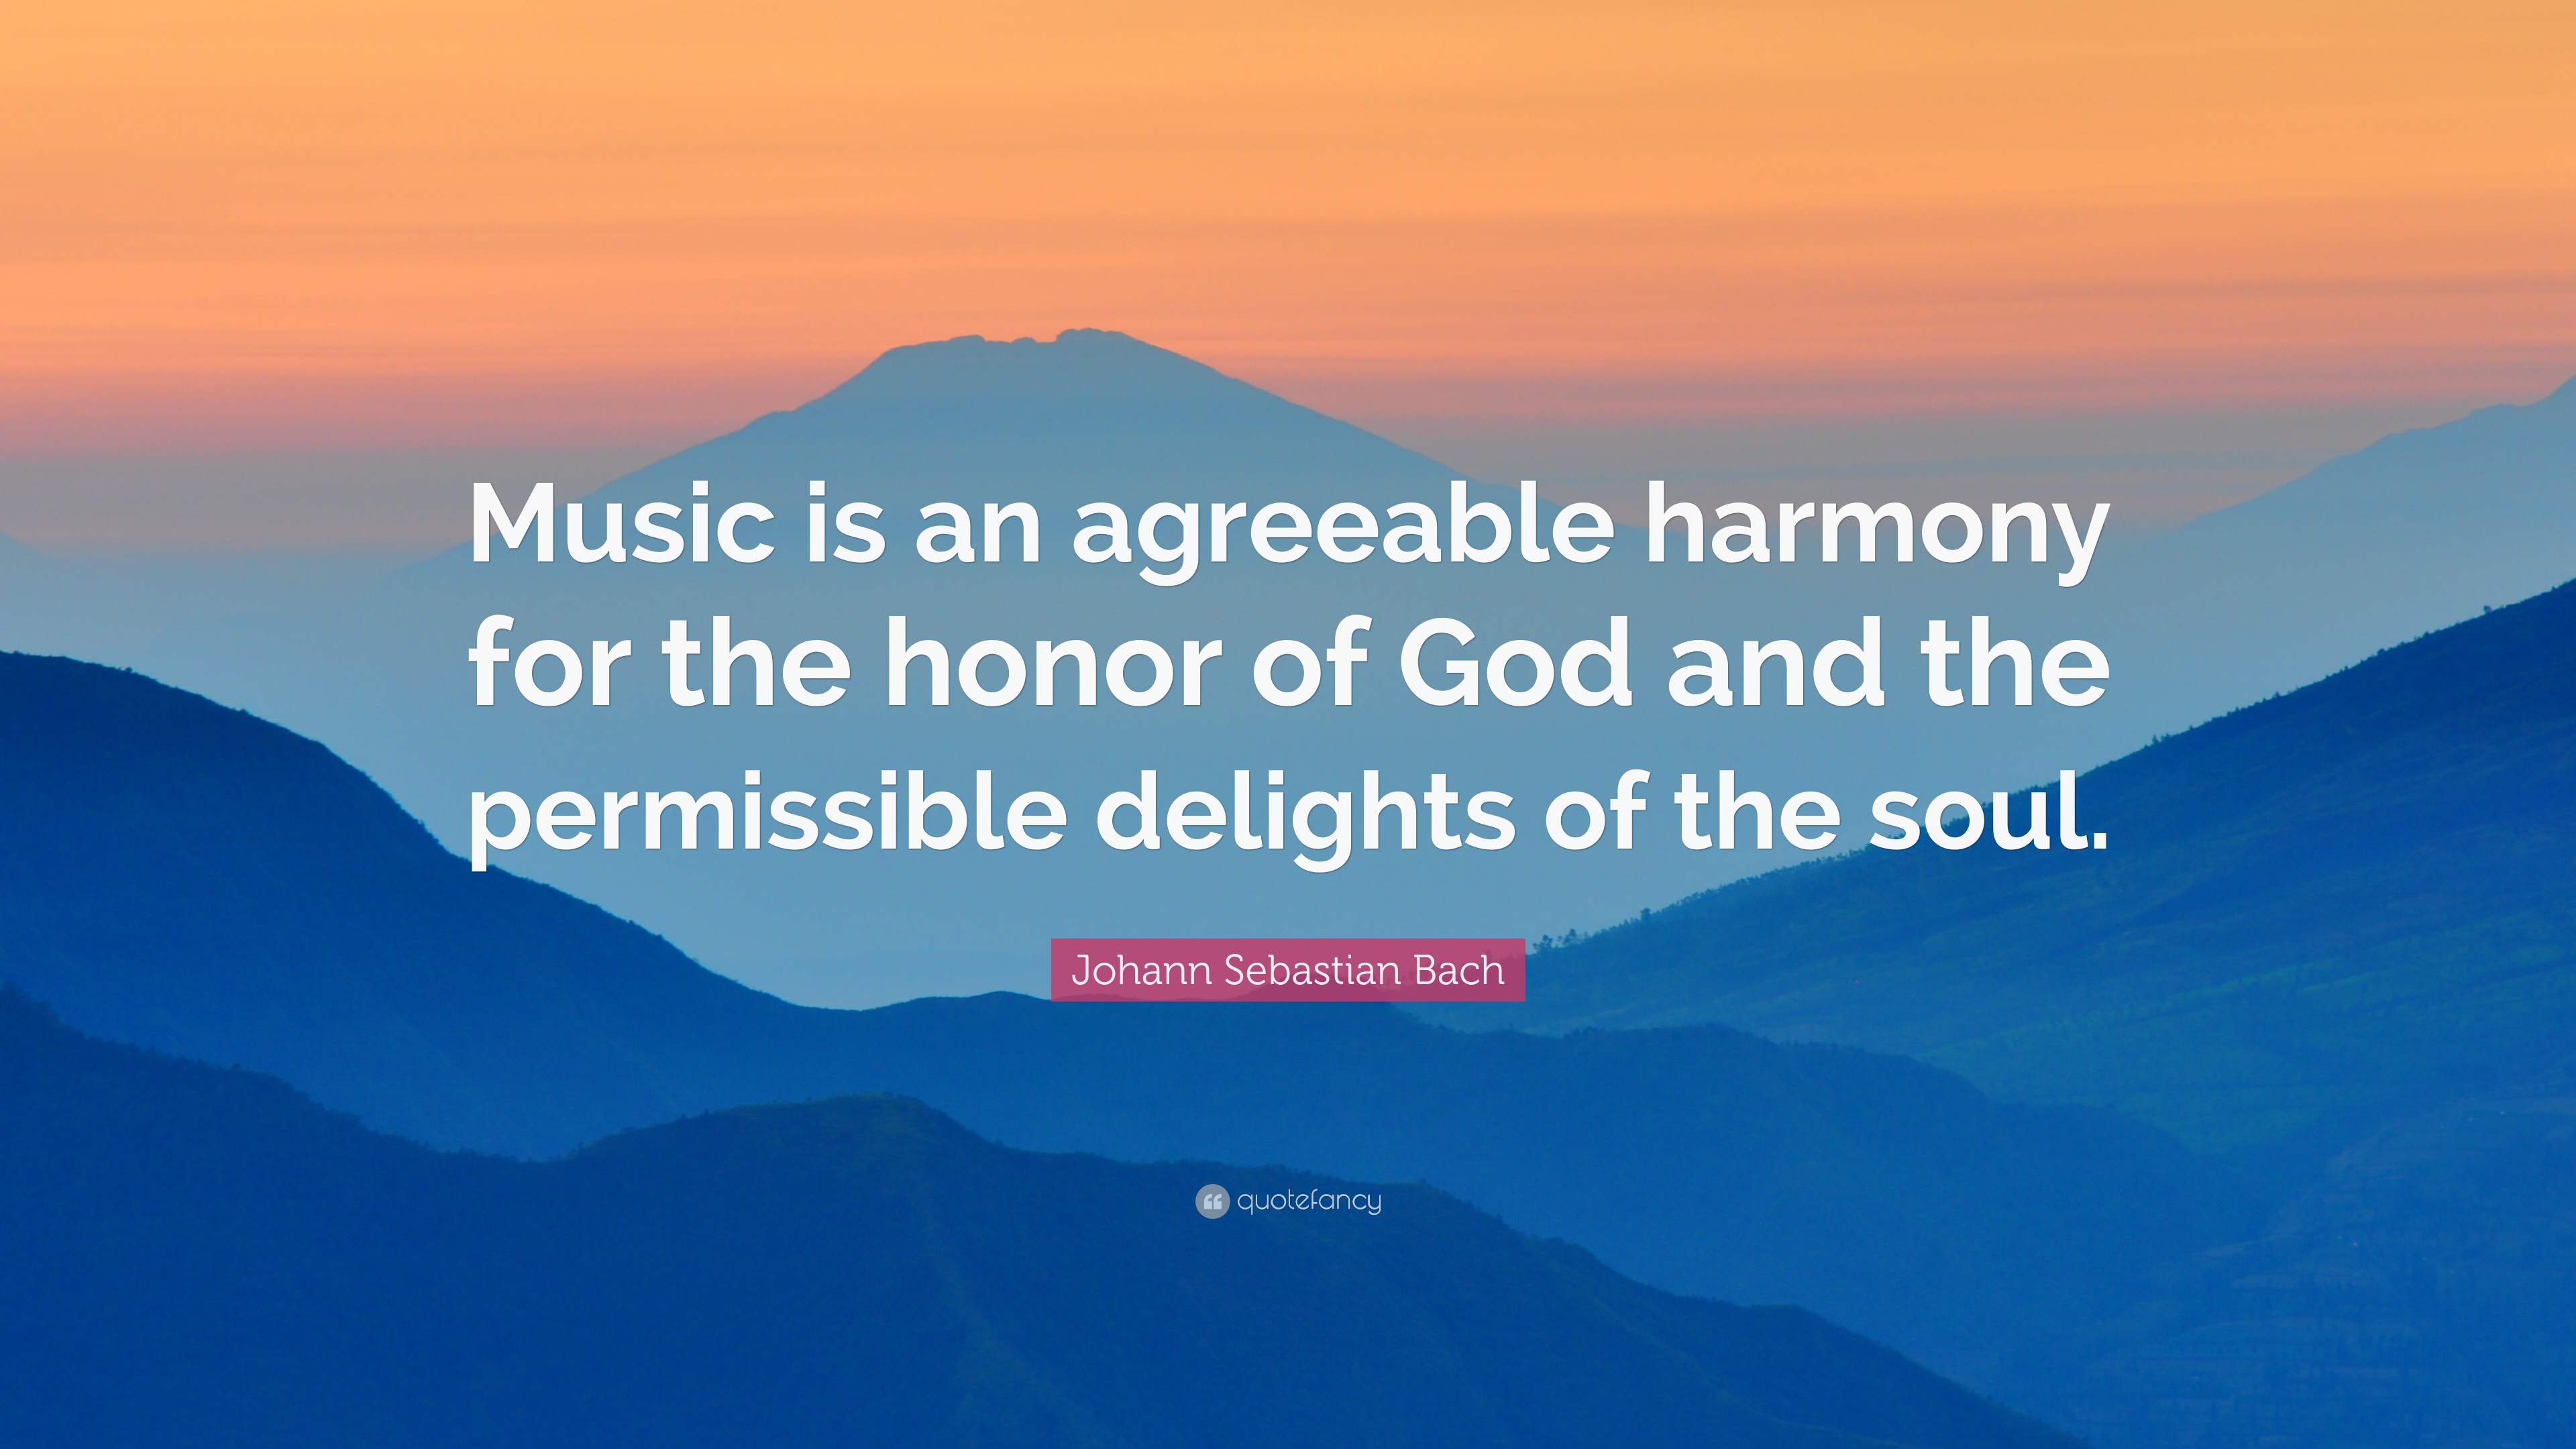 Johann Sebastian Bach Quote: “Music is an agreeable harmony